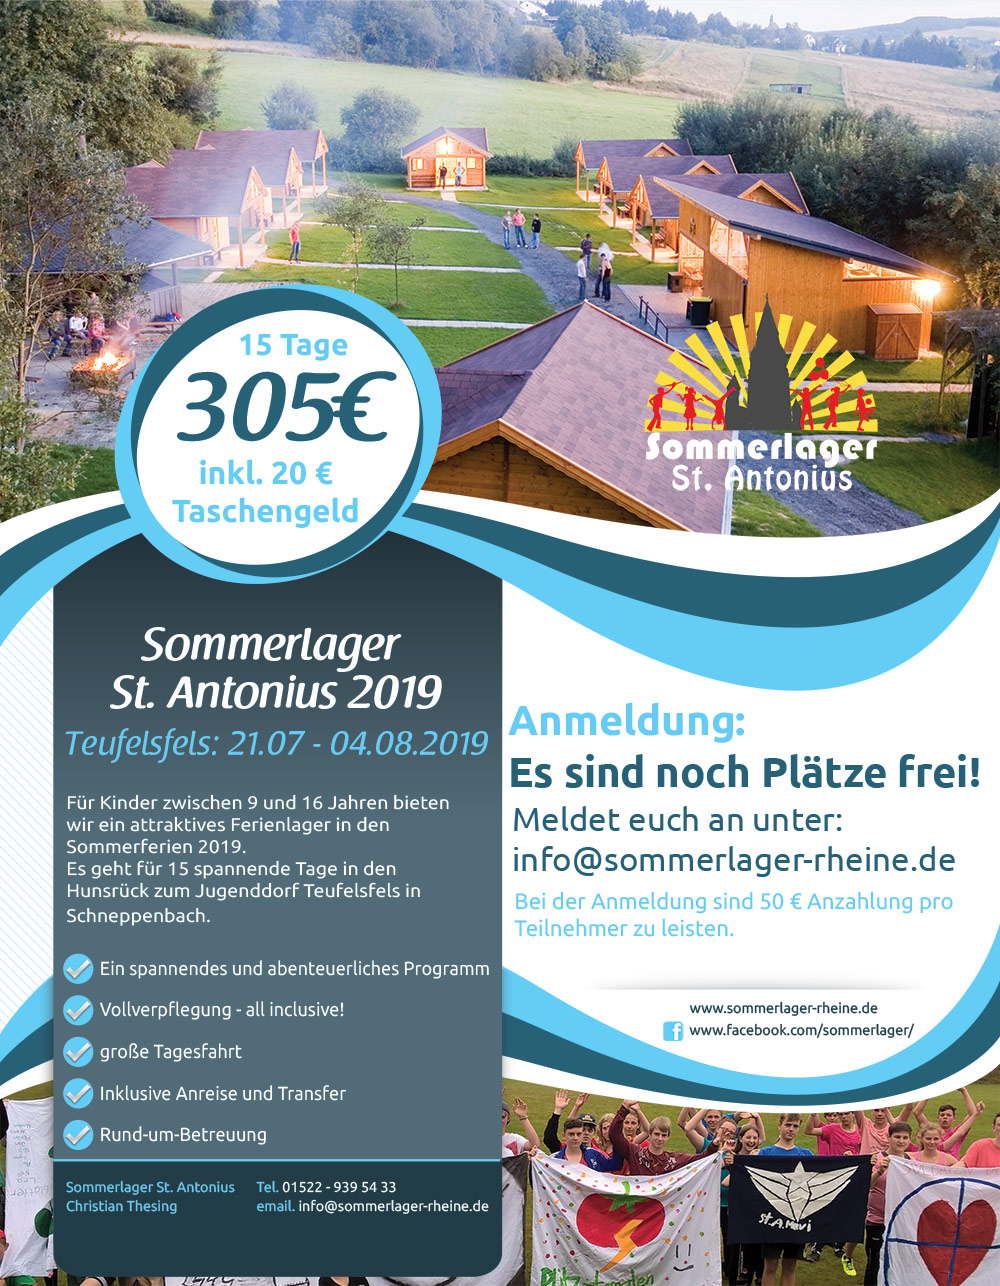 Sommerlager Rheine - St Antonius 2019 Flyer